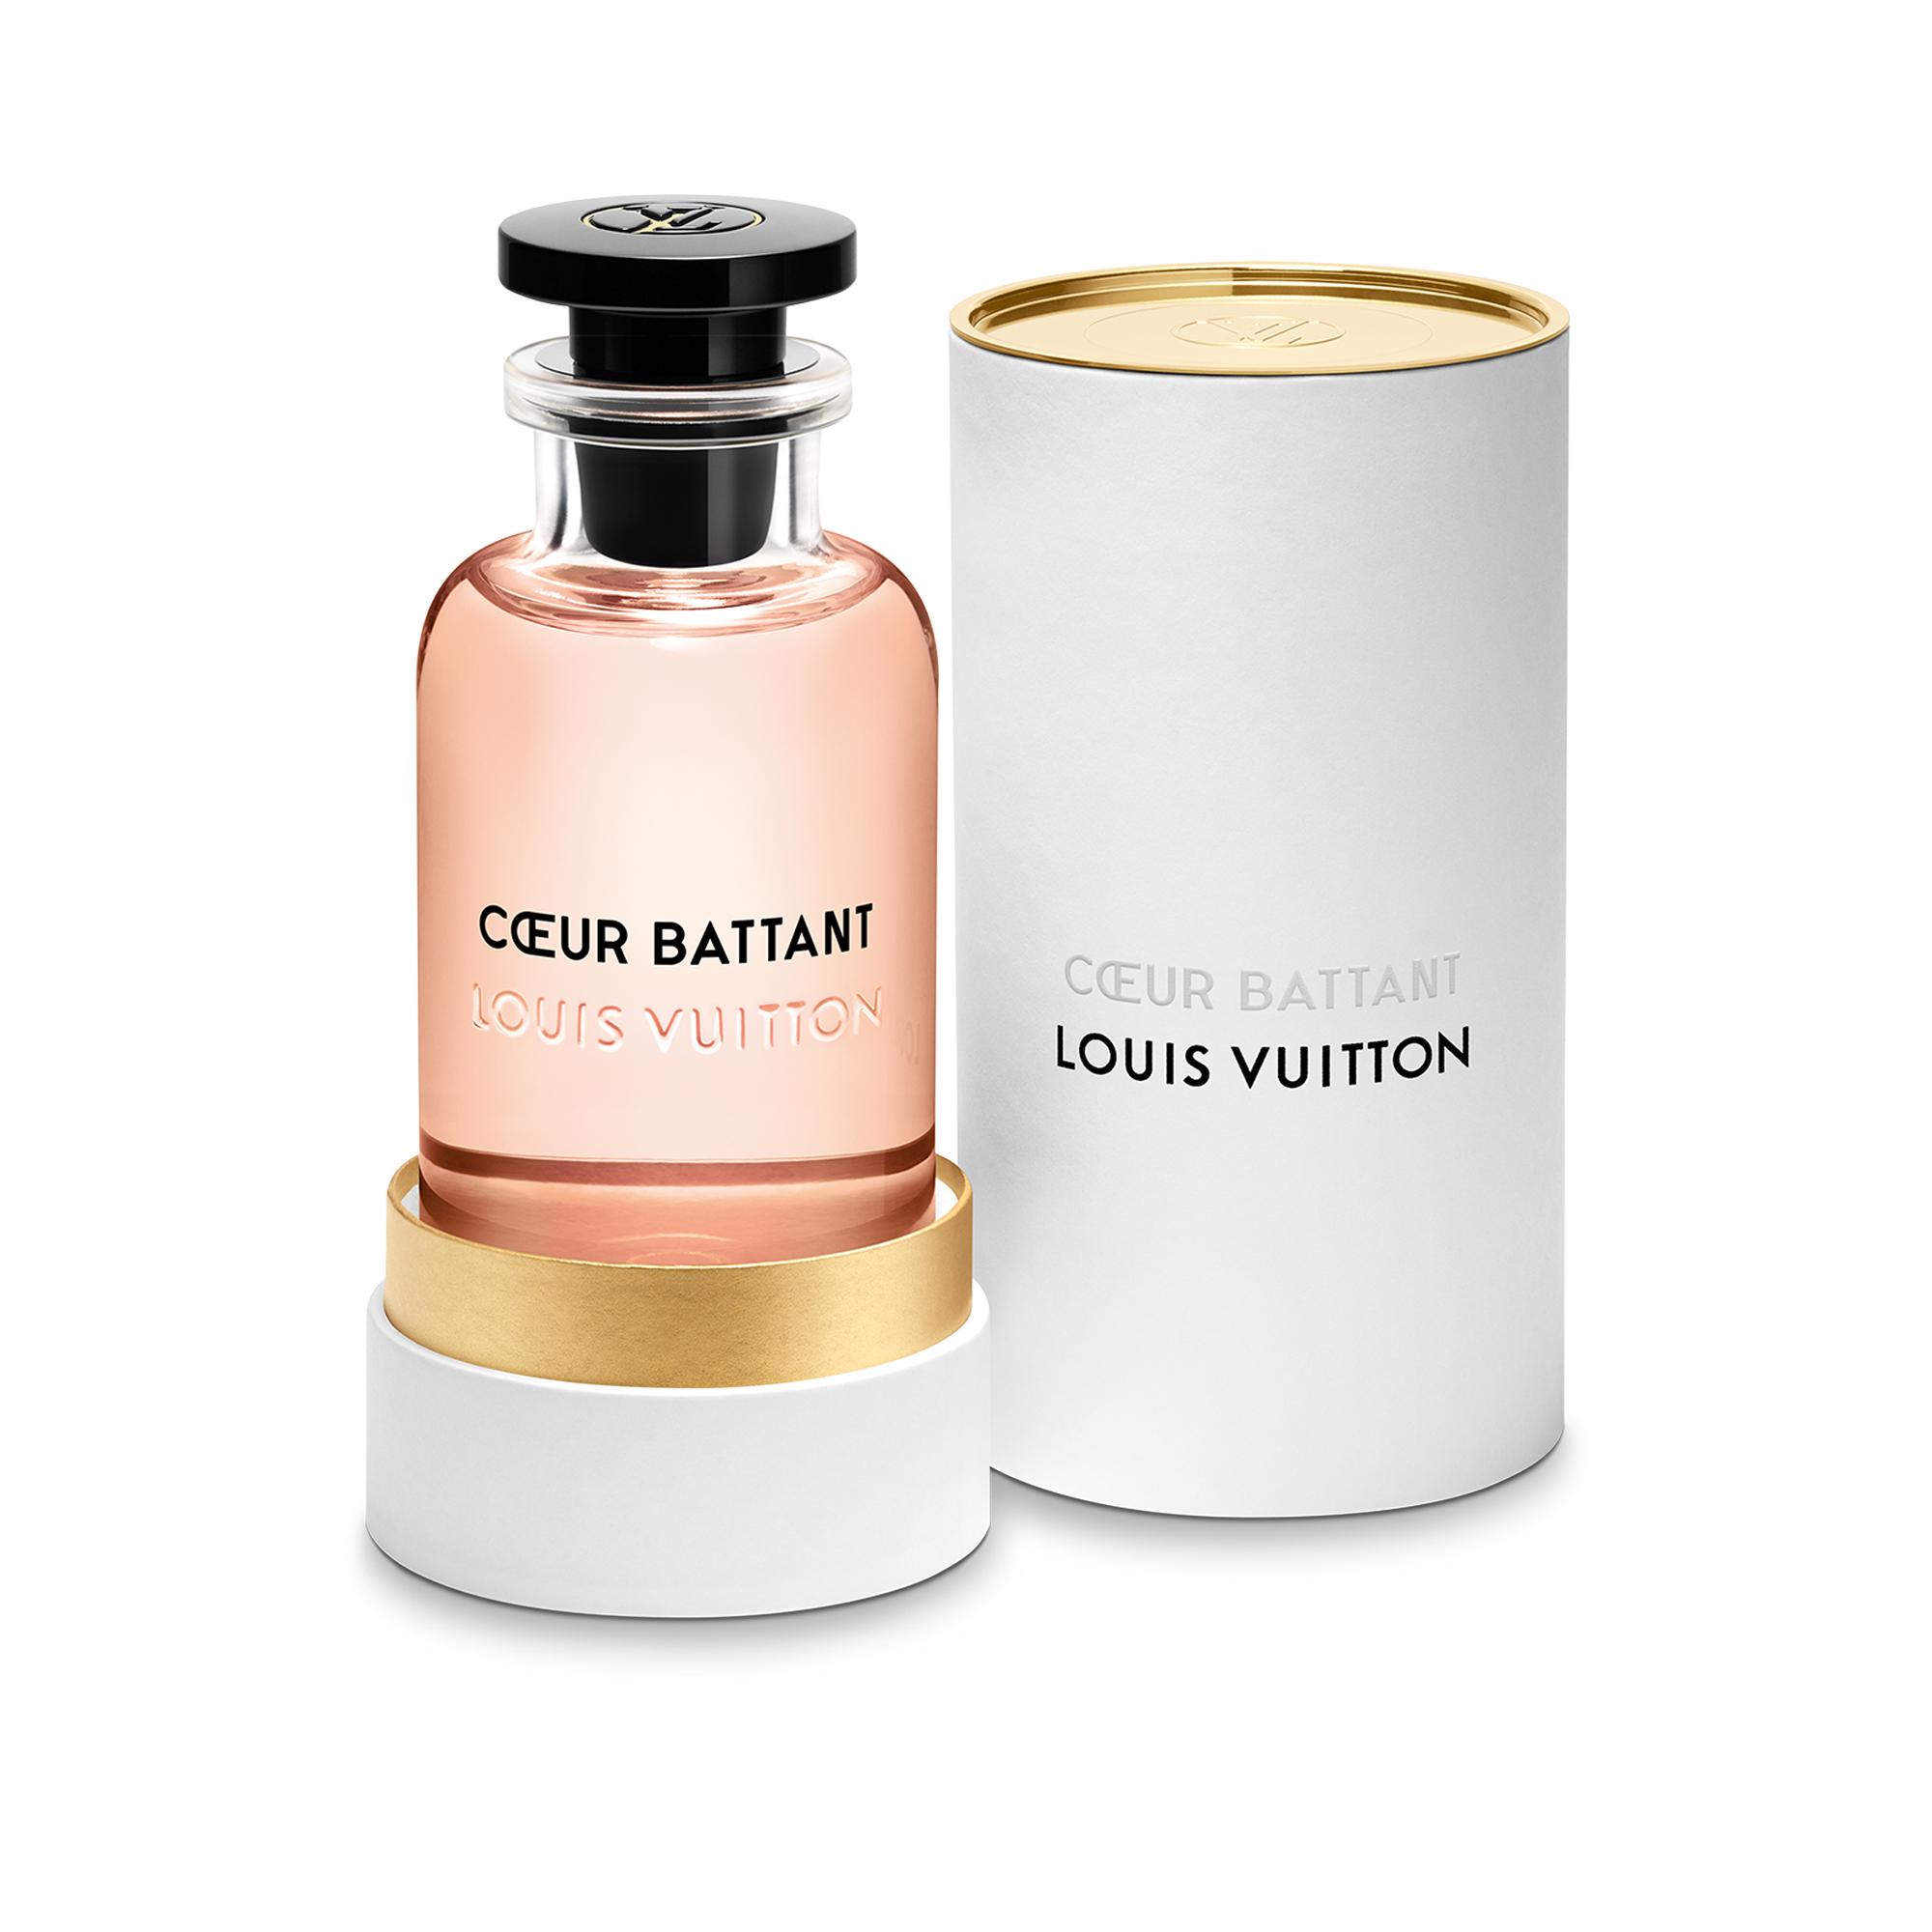 NEW Louis Vuitton MATIERE NOIRE 0.34OZ 10ml Perfume Travel Sample